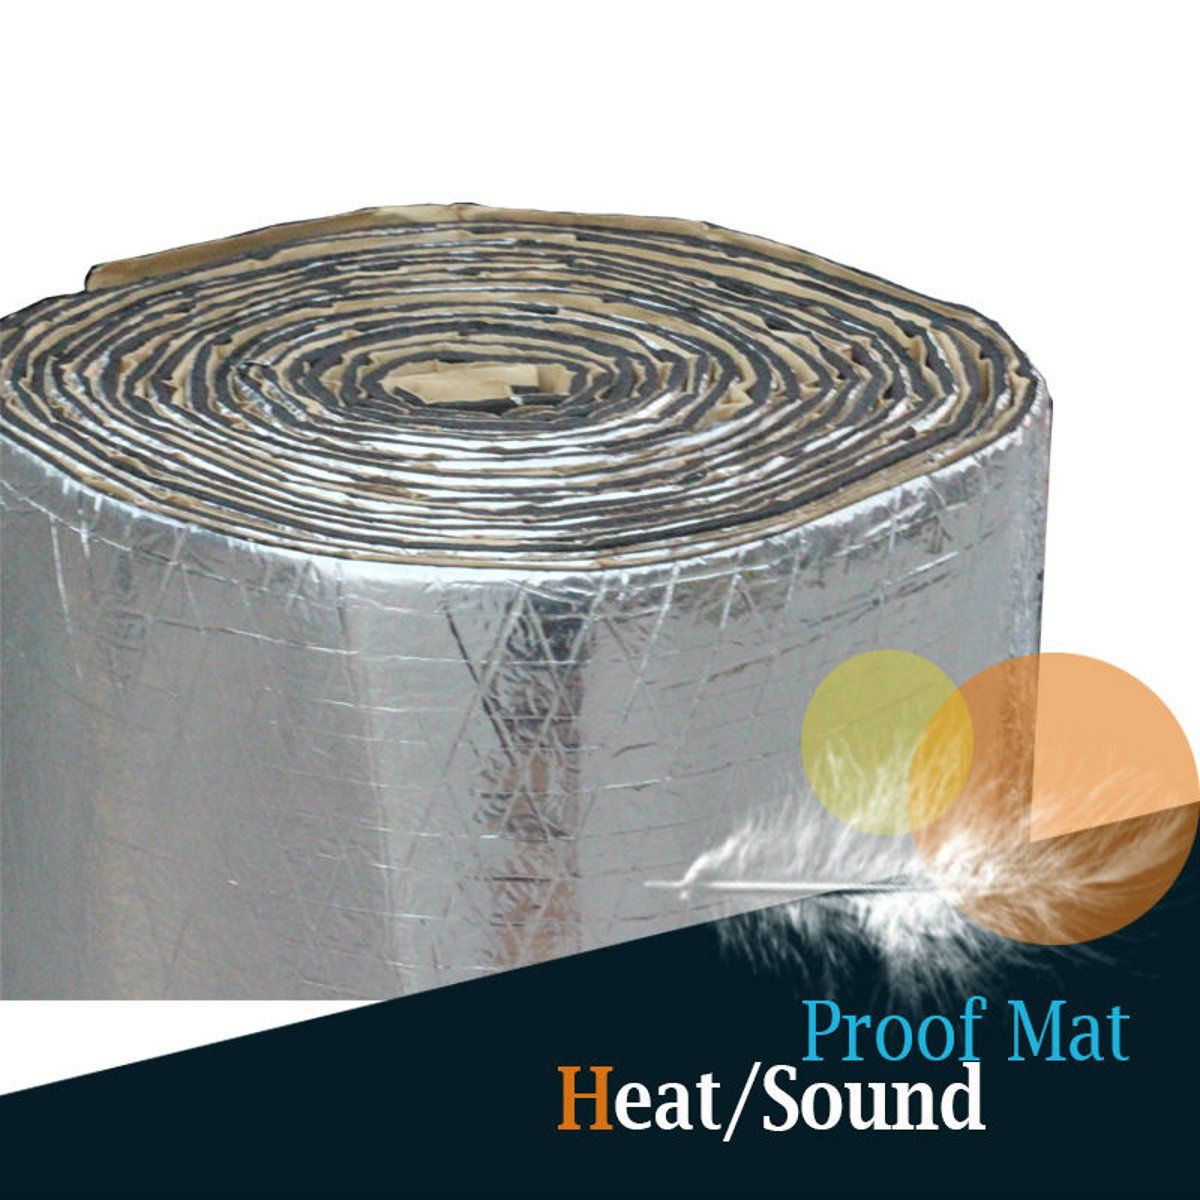 Sound-And-Heat-Proofing-Car-Auto-Deadener-Sound-Insulation-Cotton-Underlay-Mat-1441910